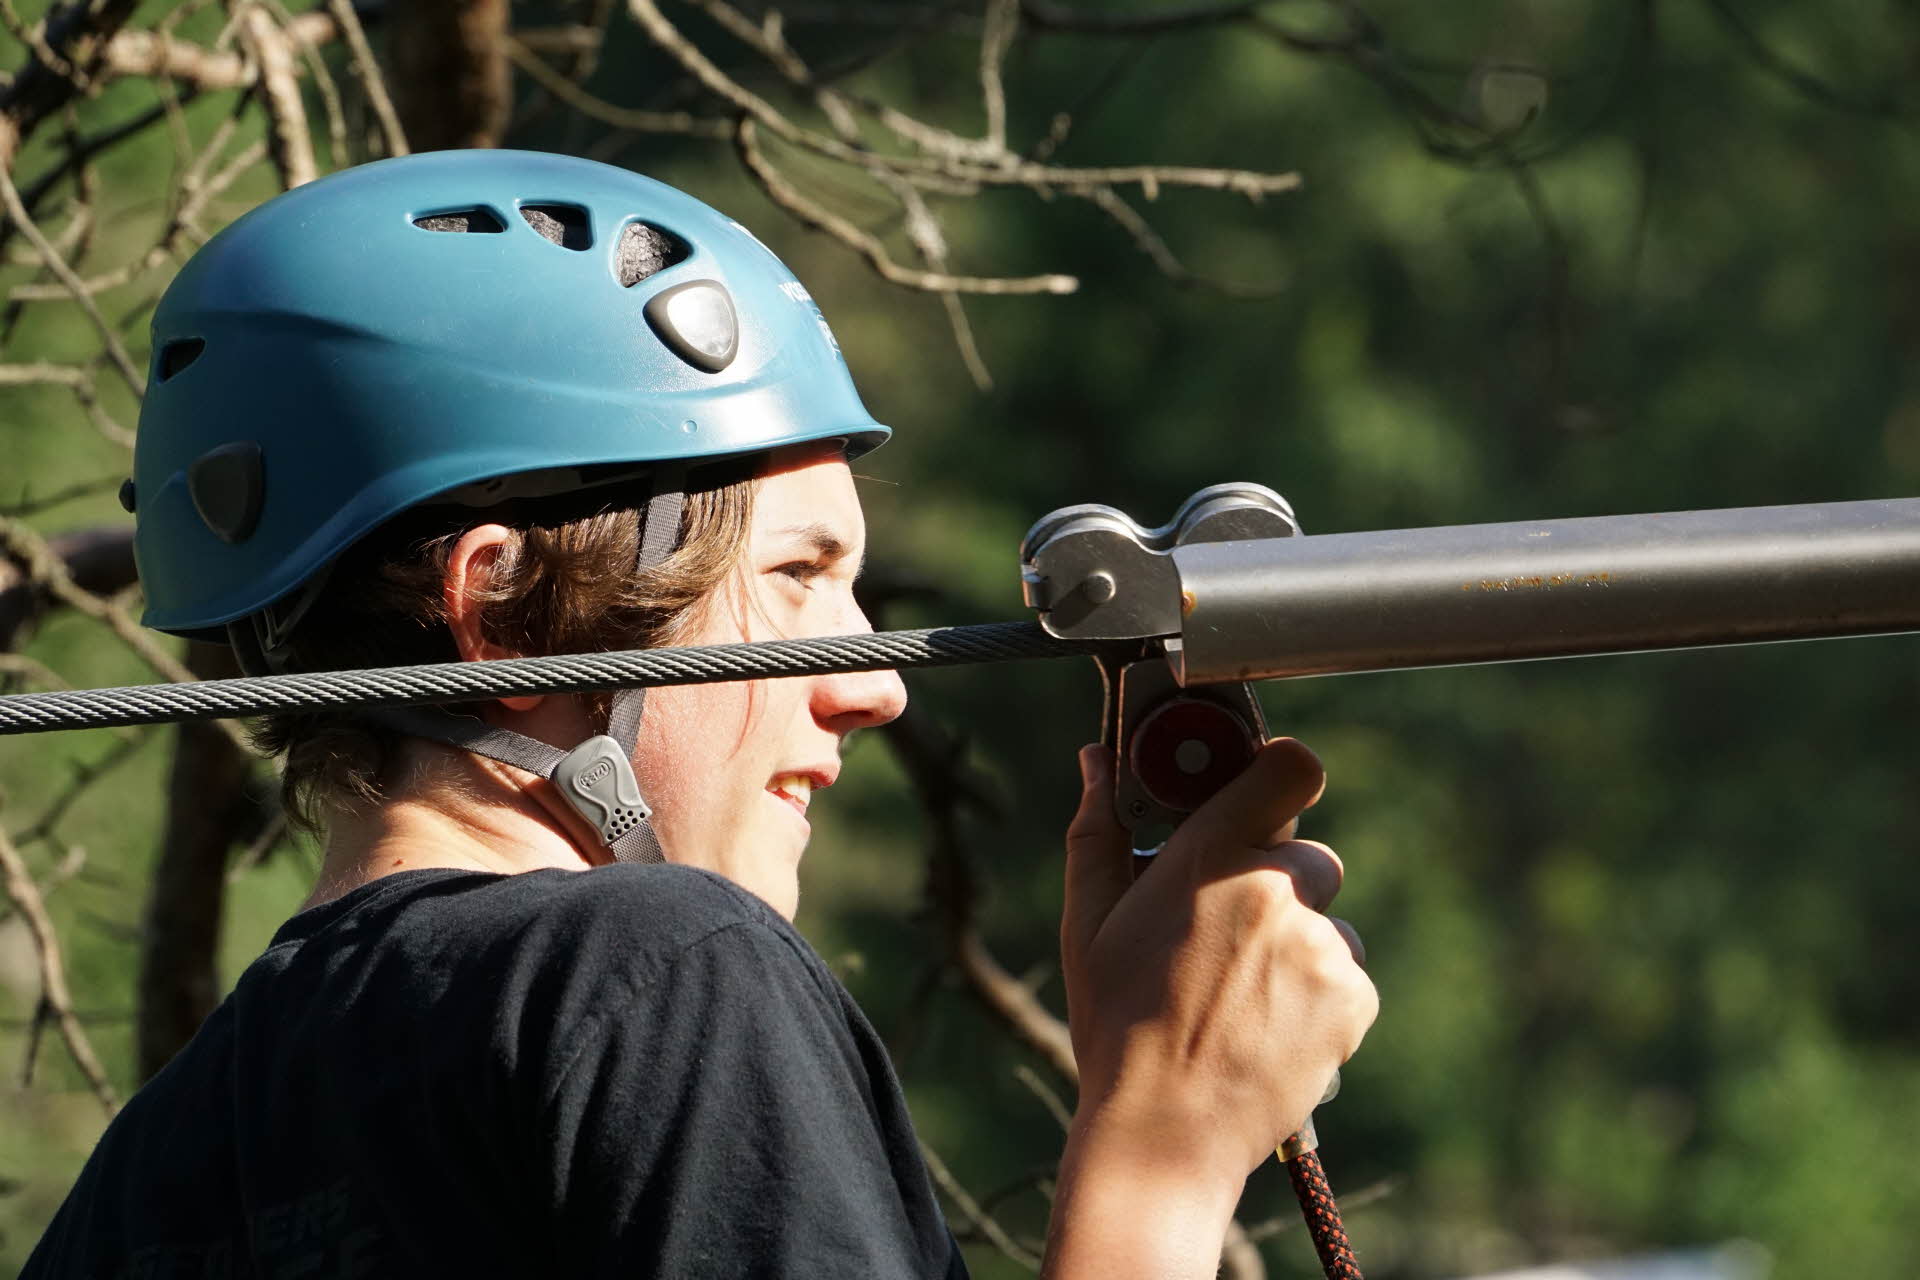 Ein Junge mit blauem Helm hält sich an der Sicherungsausrüstung fest, bevor er sich auf eine Zipline begibt.